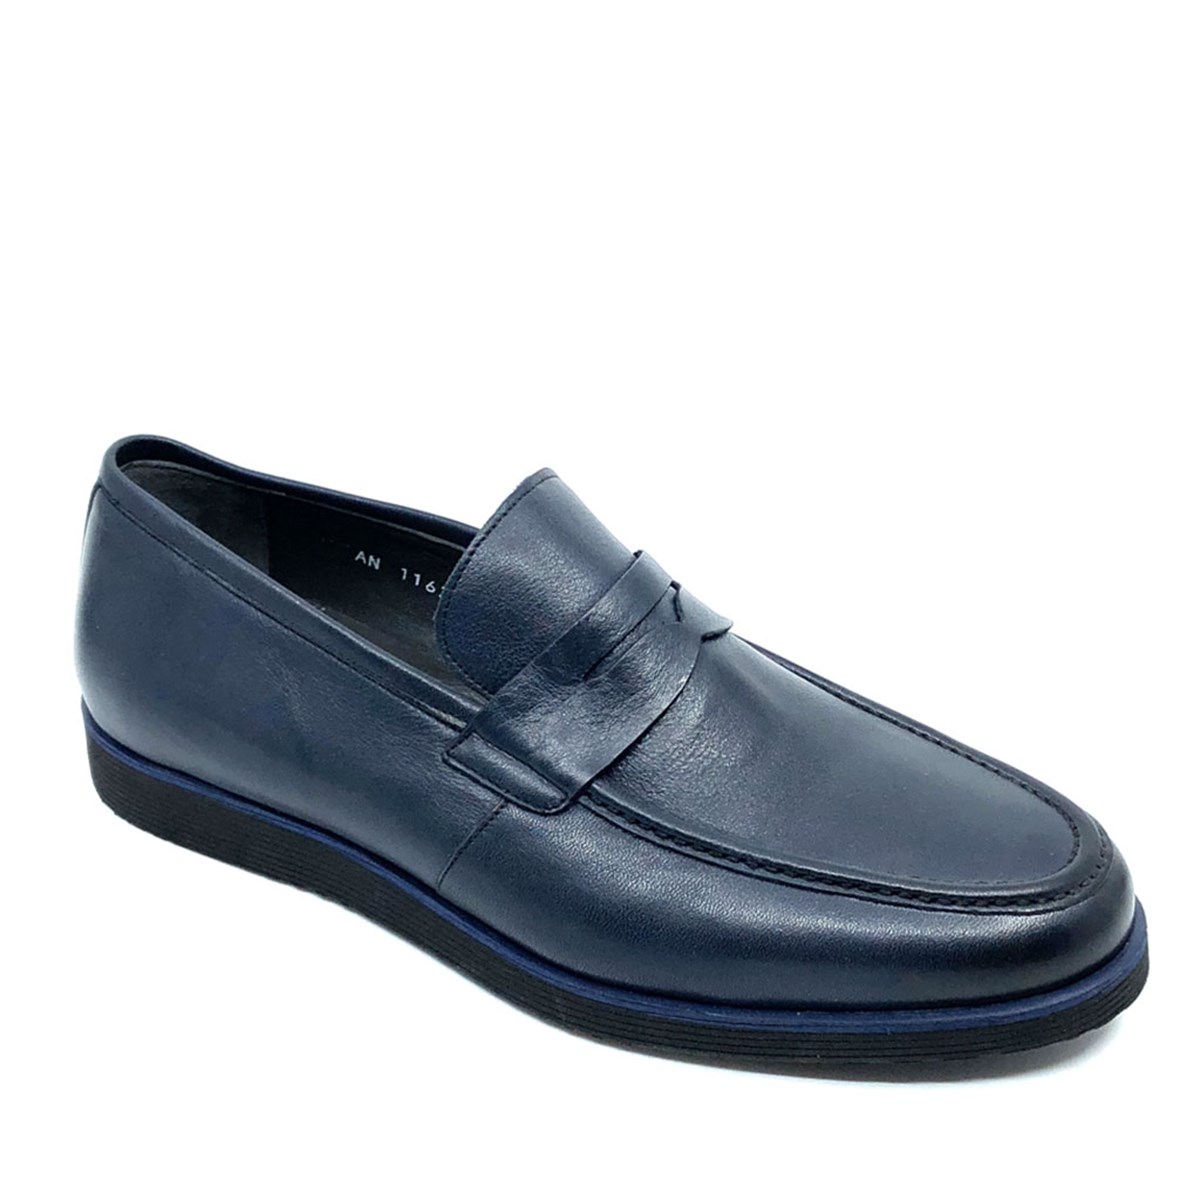 Erkek Lacivert Hakiki Deri Bağcıksız Günlük Klasik Ayakkabı, Renk: Lacivert, Beden: 40